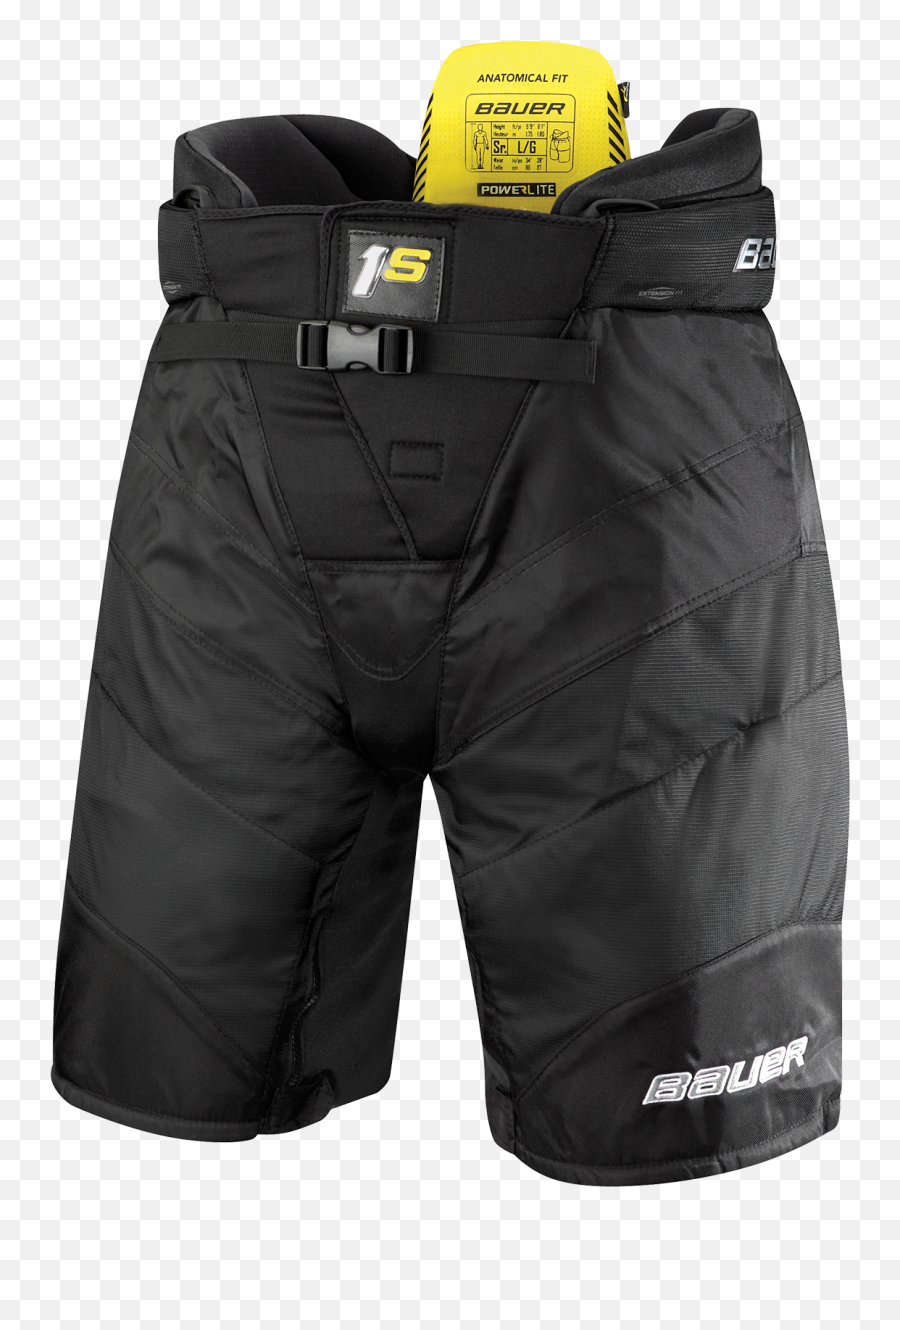 Pants Clipart Summer Shorts Pants Summer Shorts Transparent - Bauer 1s Hockey Pants Emoji,Emoji Shirt And Pants